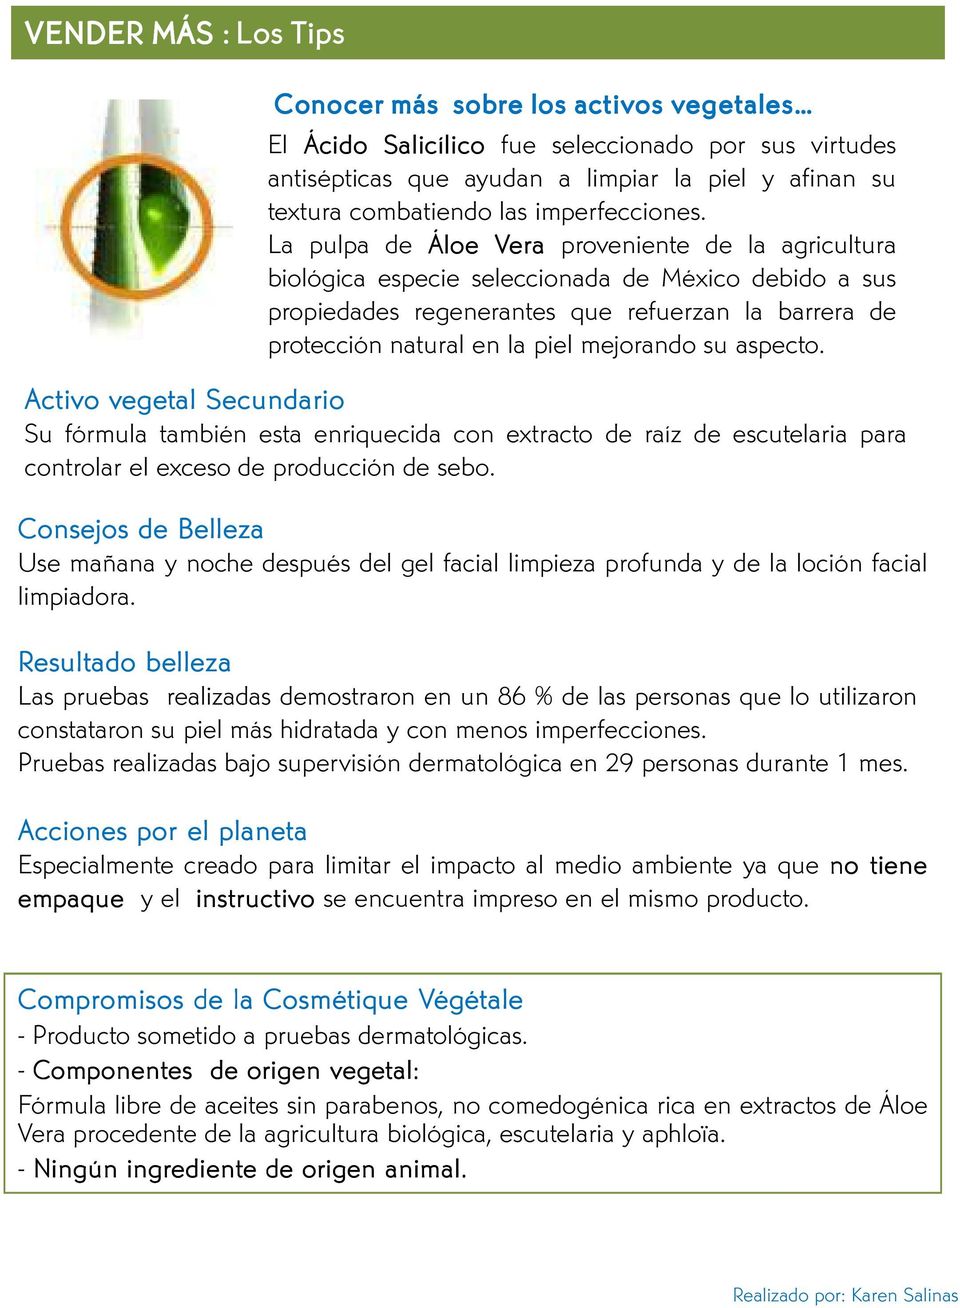 La pulpa de Áloe Vera proveniente de la agricultura biológica especie seleccionada de México debido a sus propiedades regenerantes que refuerzan la barrera de protección natural en la piel mejorando